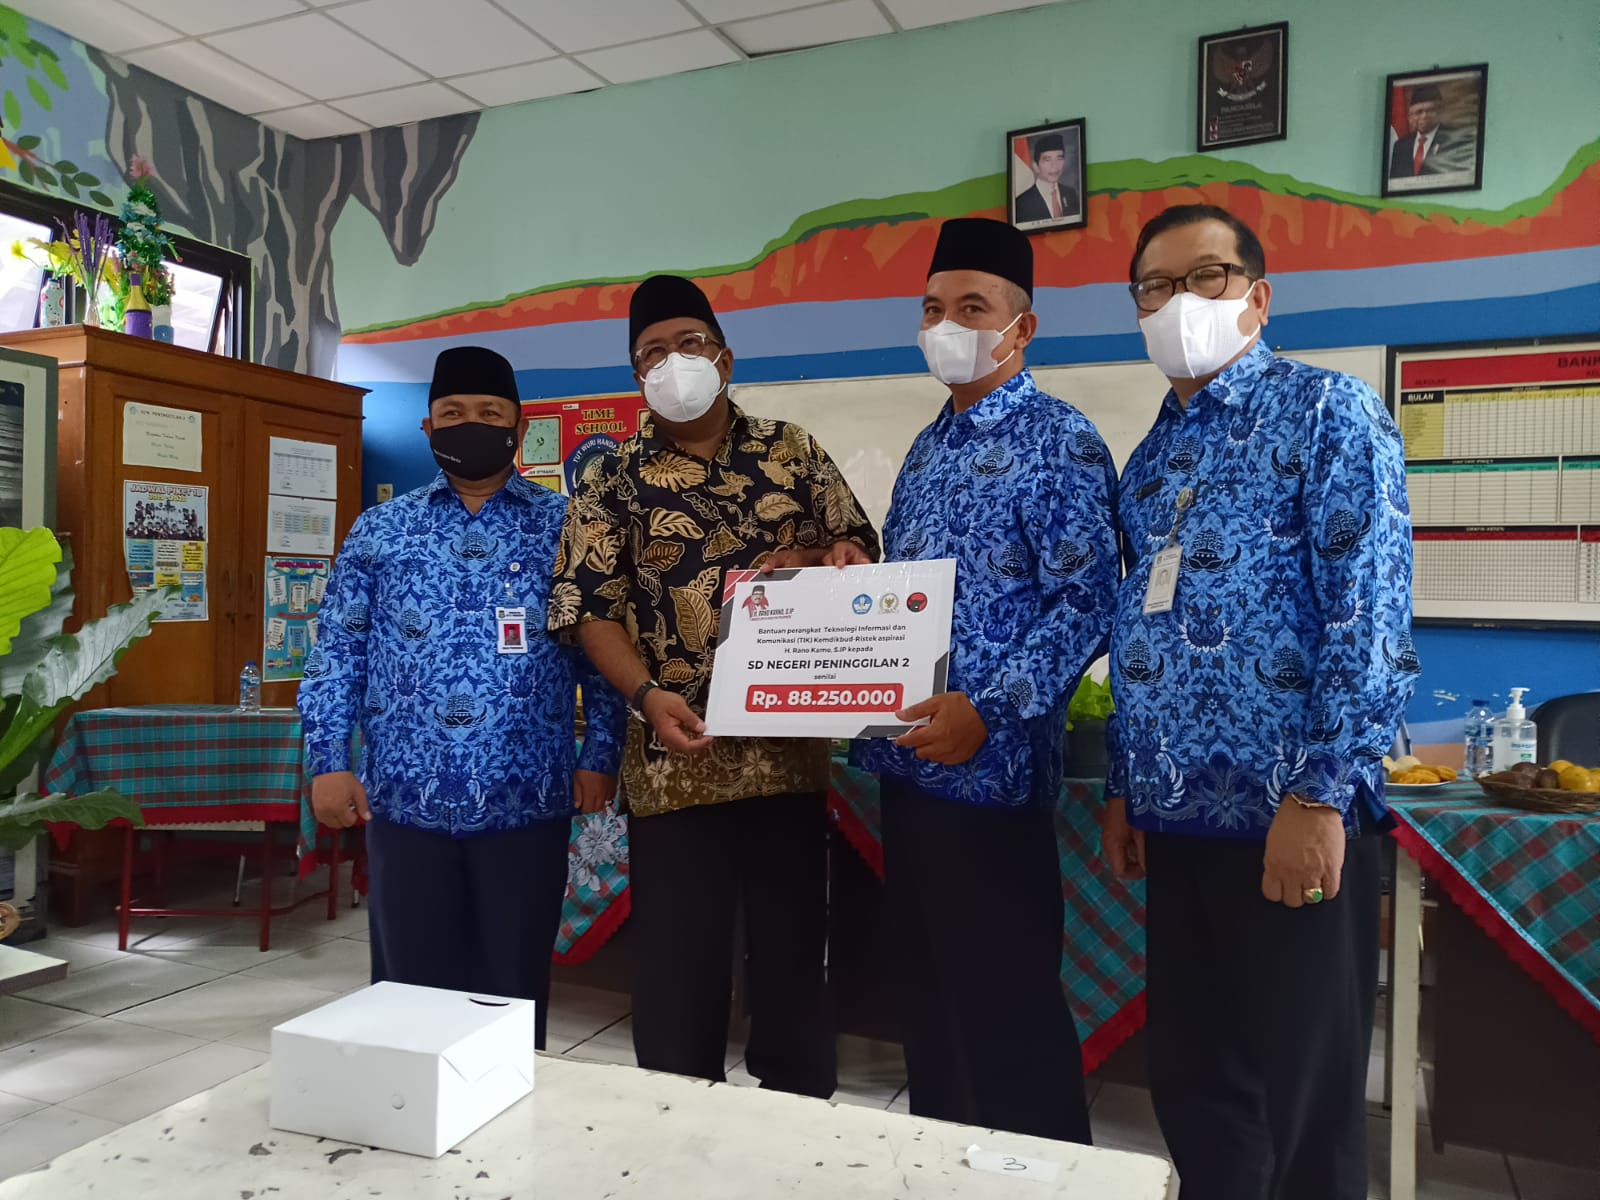 Anggota DPR RI Komisi X Rano Karno menyalurkan bantuan perangkat teknologi informasi dan komunikasi (TIK) dari Kemendikbud Ristek kepada SDN Paninggilan 2 di Ciledug, Kota Tangerang.